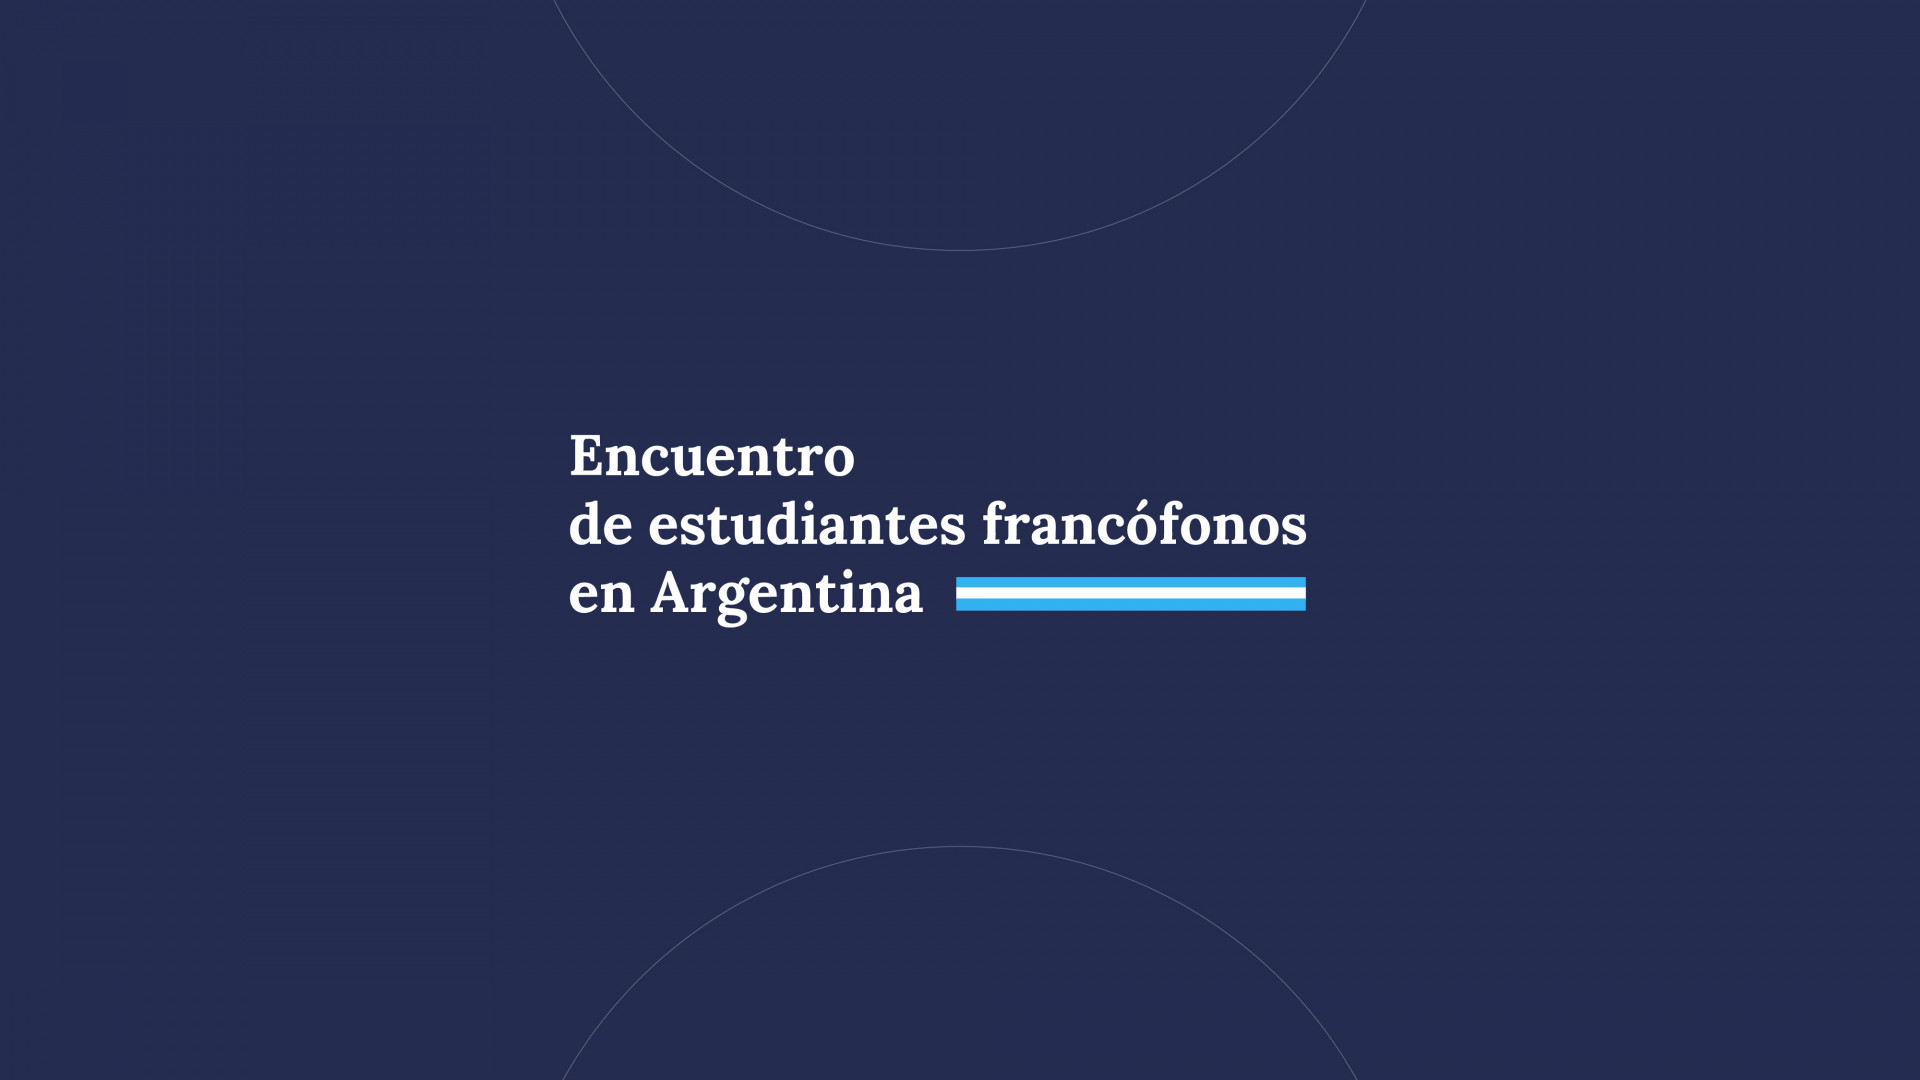 noticiaspuertosantacruz.com.ar - Imagen extraida de: https://argentina.gob.ar/noticias/segundo-encuentro-de-estudiantes-francofonos-en-argentina